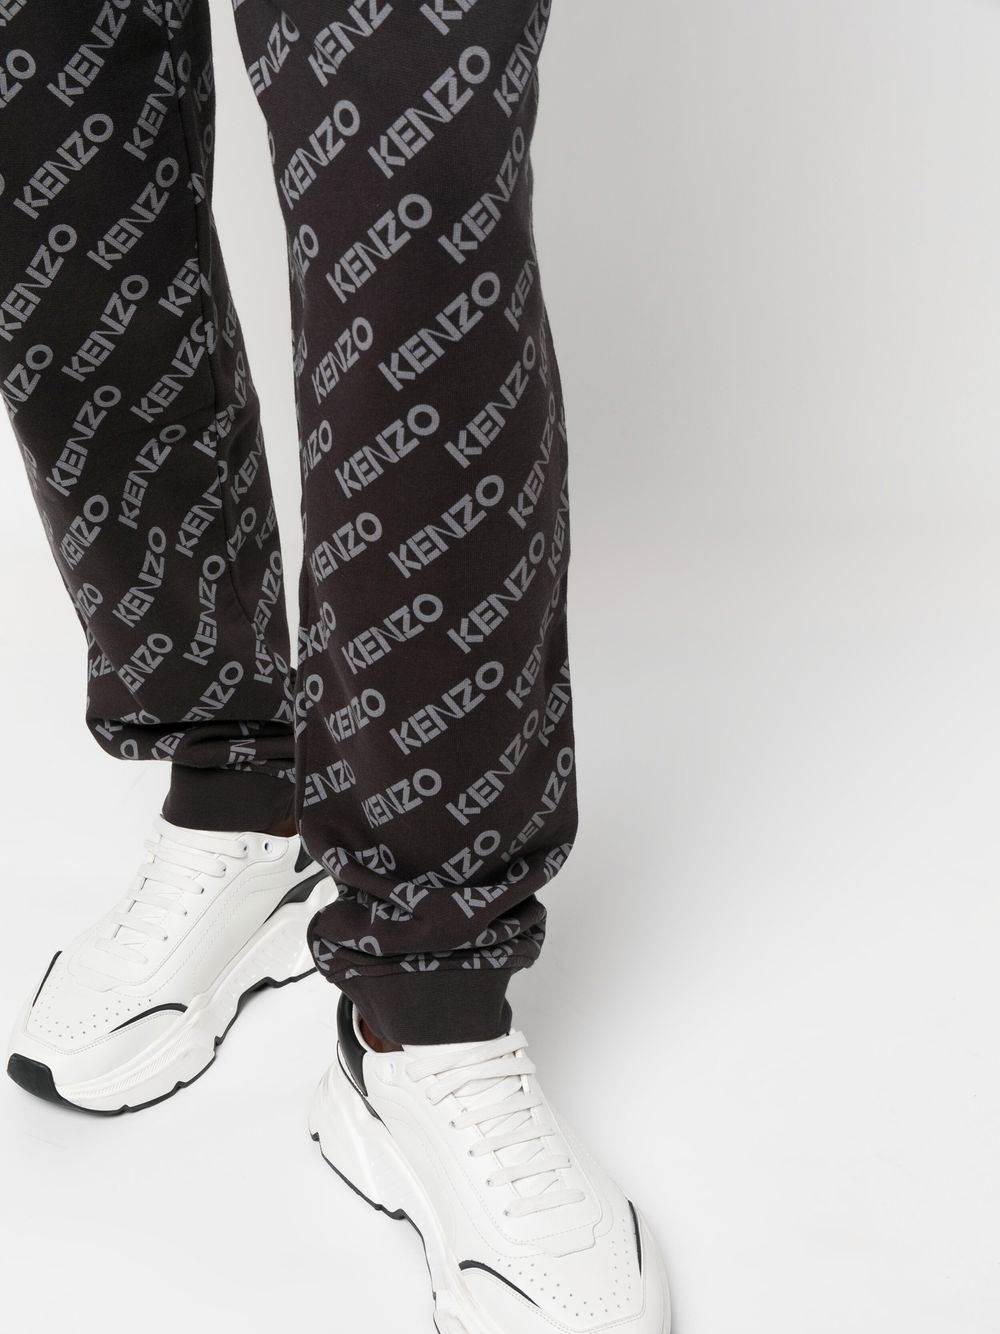 Kenzo Men's Black Monogram Track Pants, Size Medium FC65PA7924MF-99J -  Jomashop